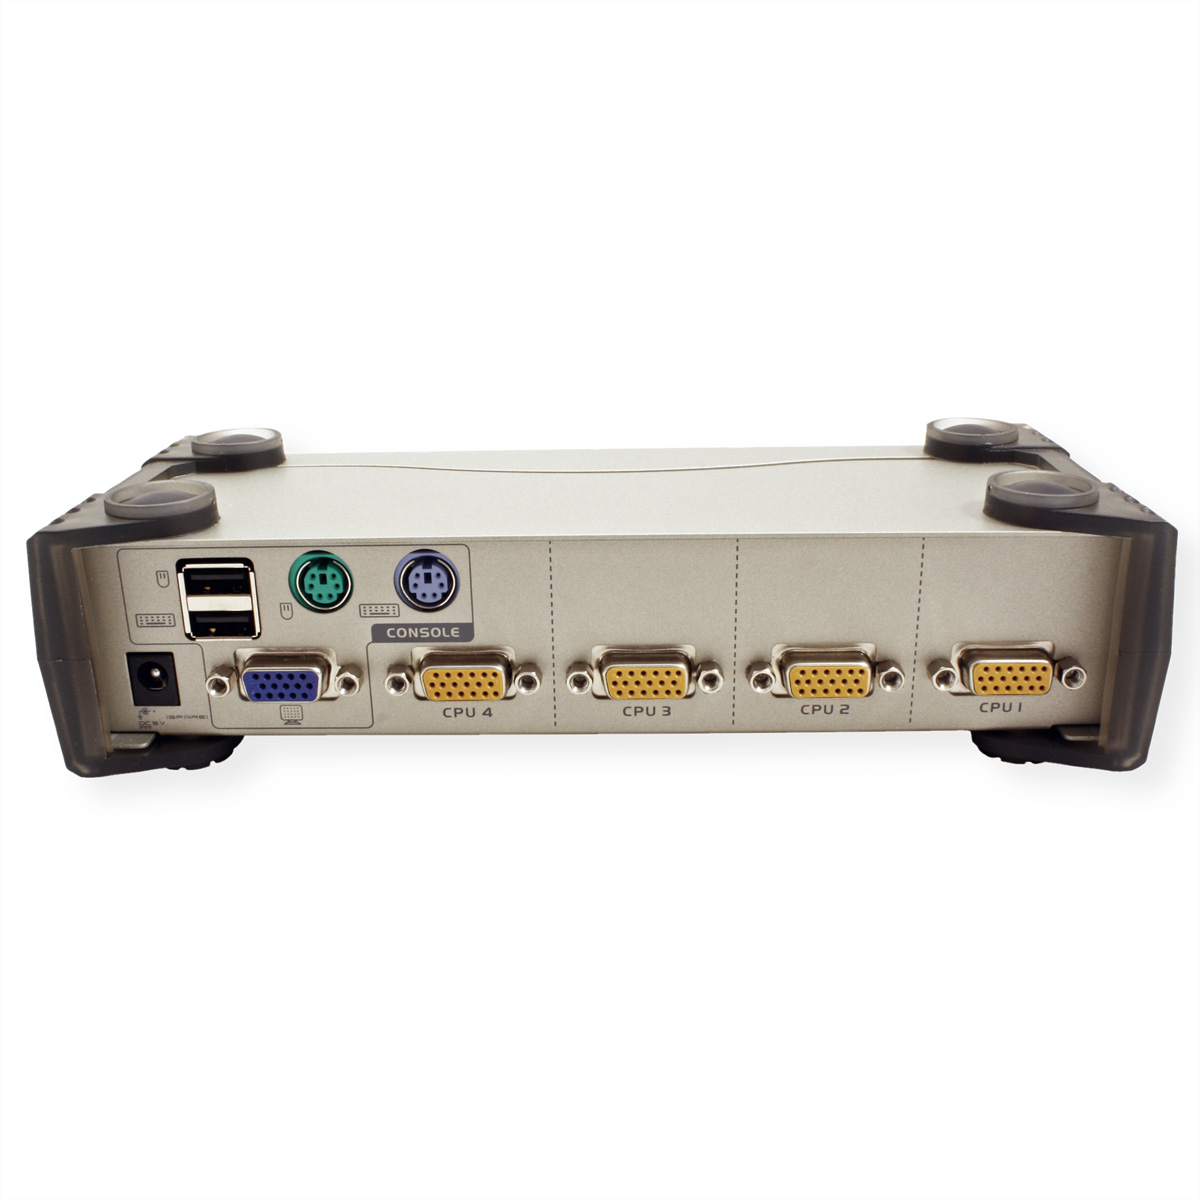 KVM ATEN KVM-Switch, Switch CS84U VGA PS/2+USB, 4 VGA, Ports